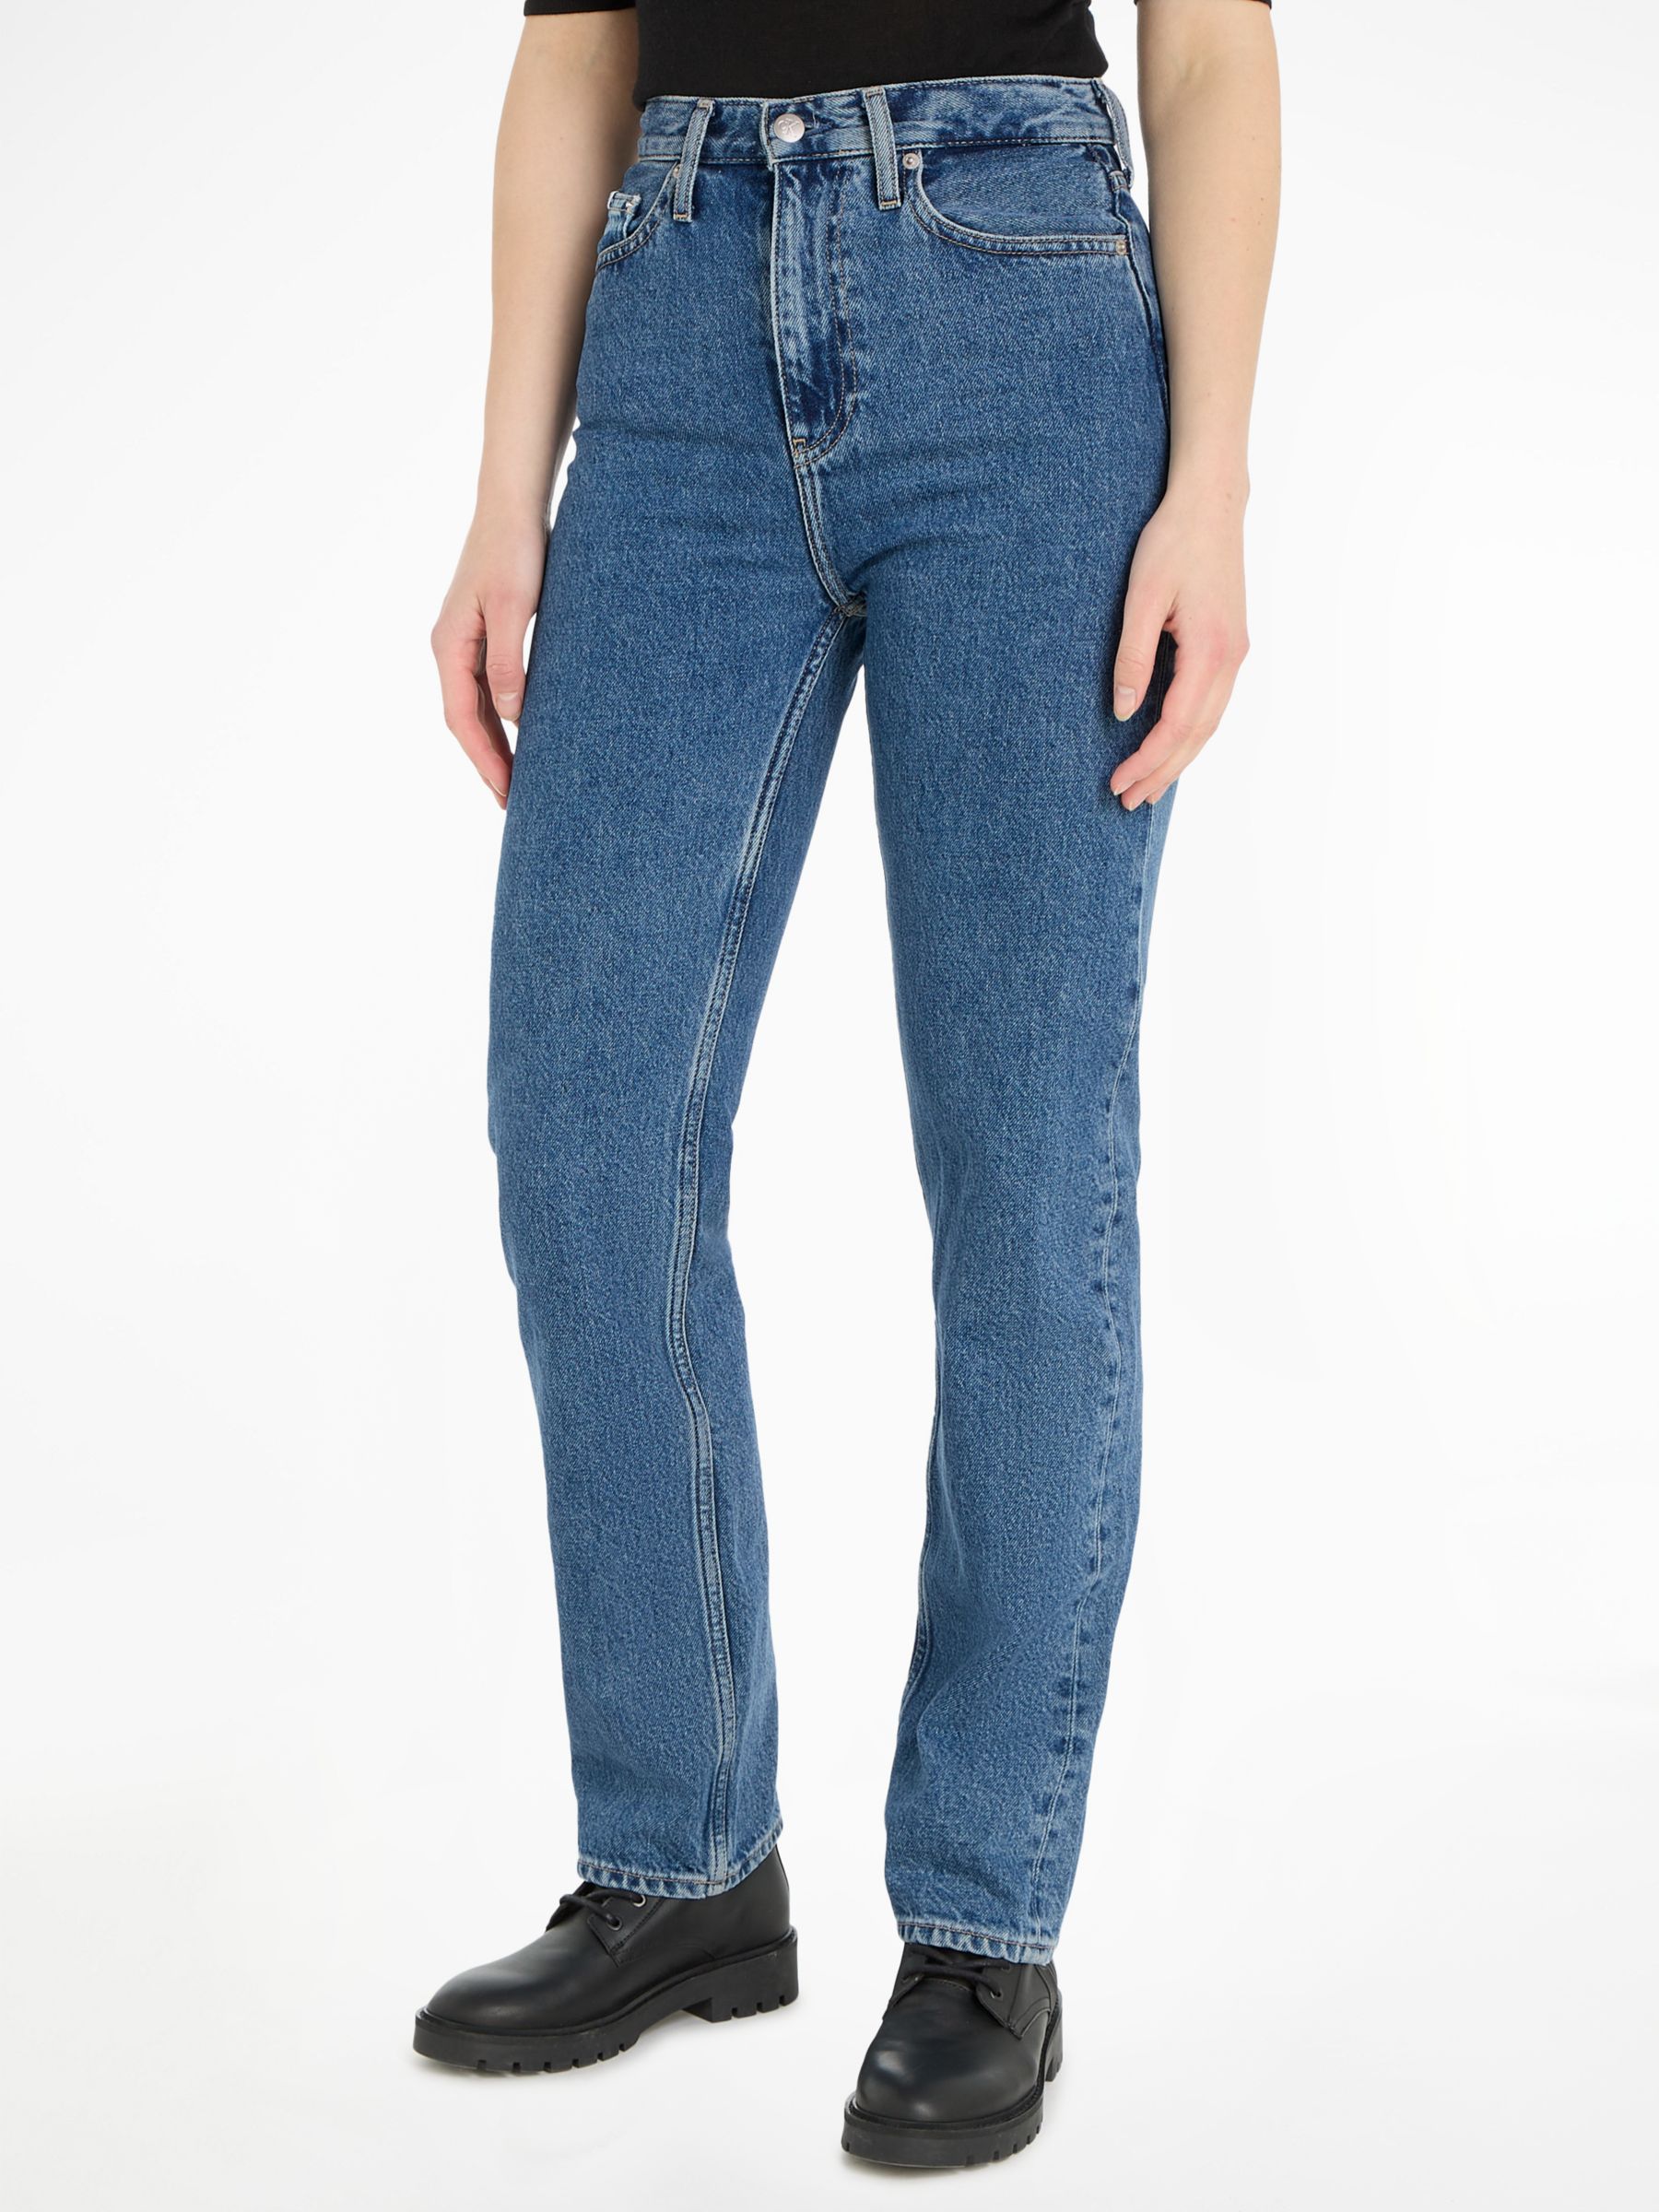 Calvin Klein Jeans High Rise Straight Leg Jeans, Medium Denim, 24R